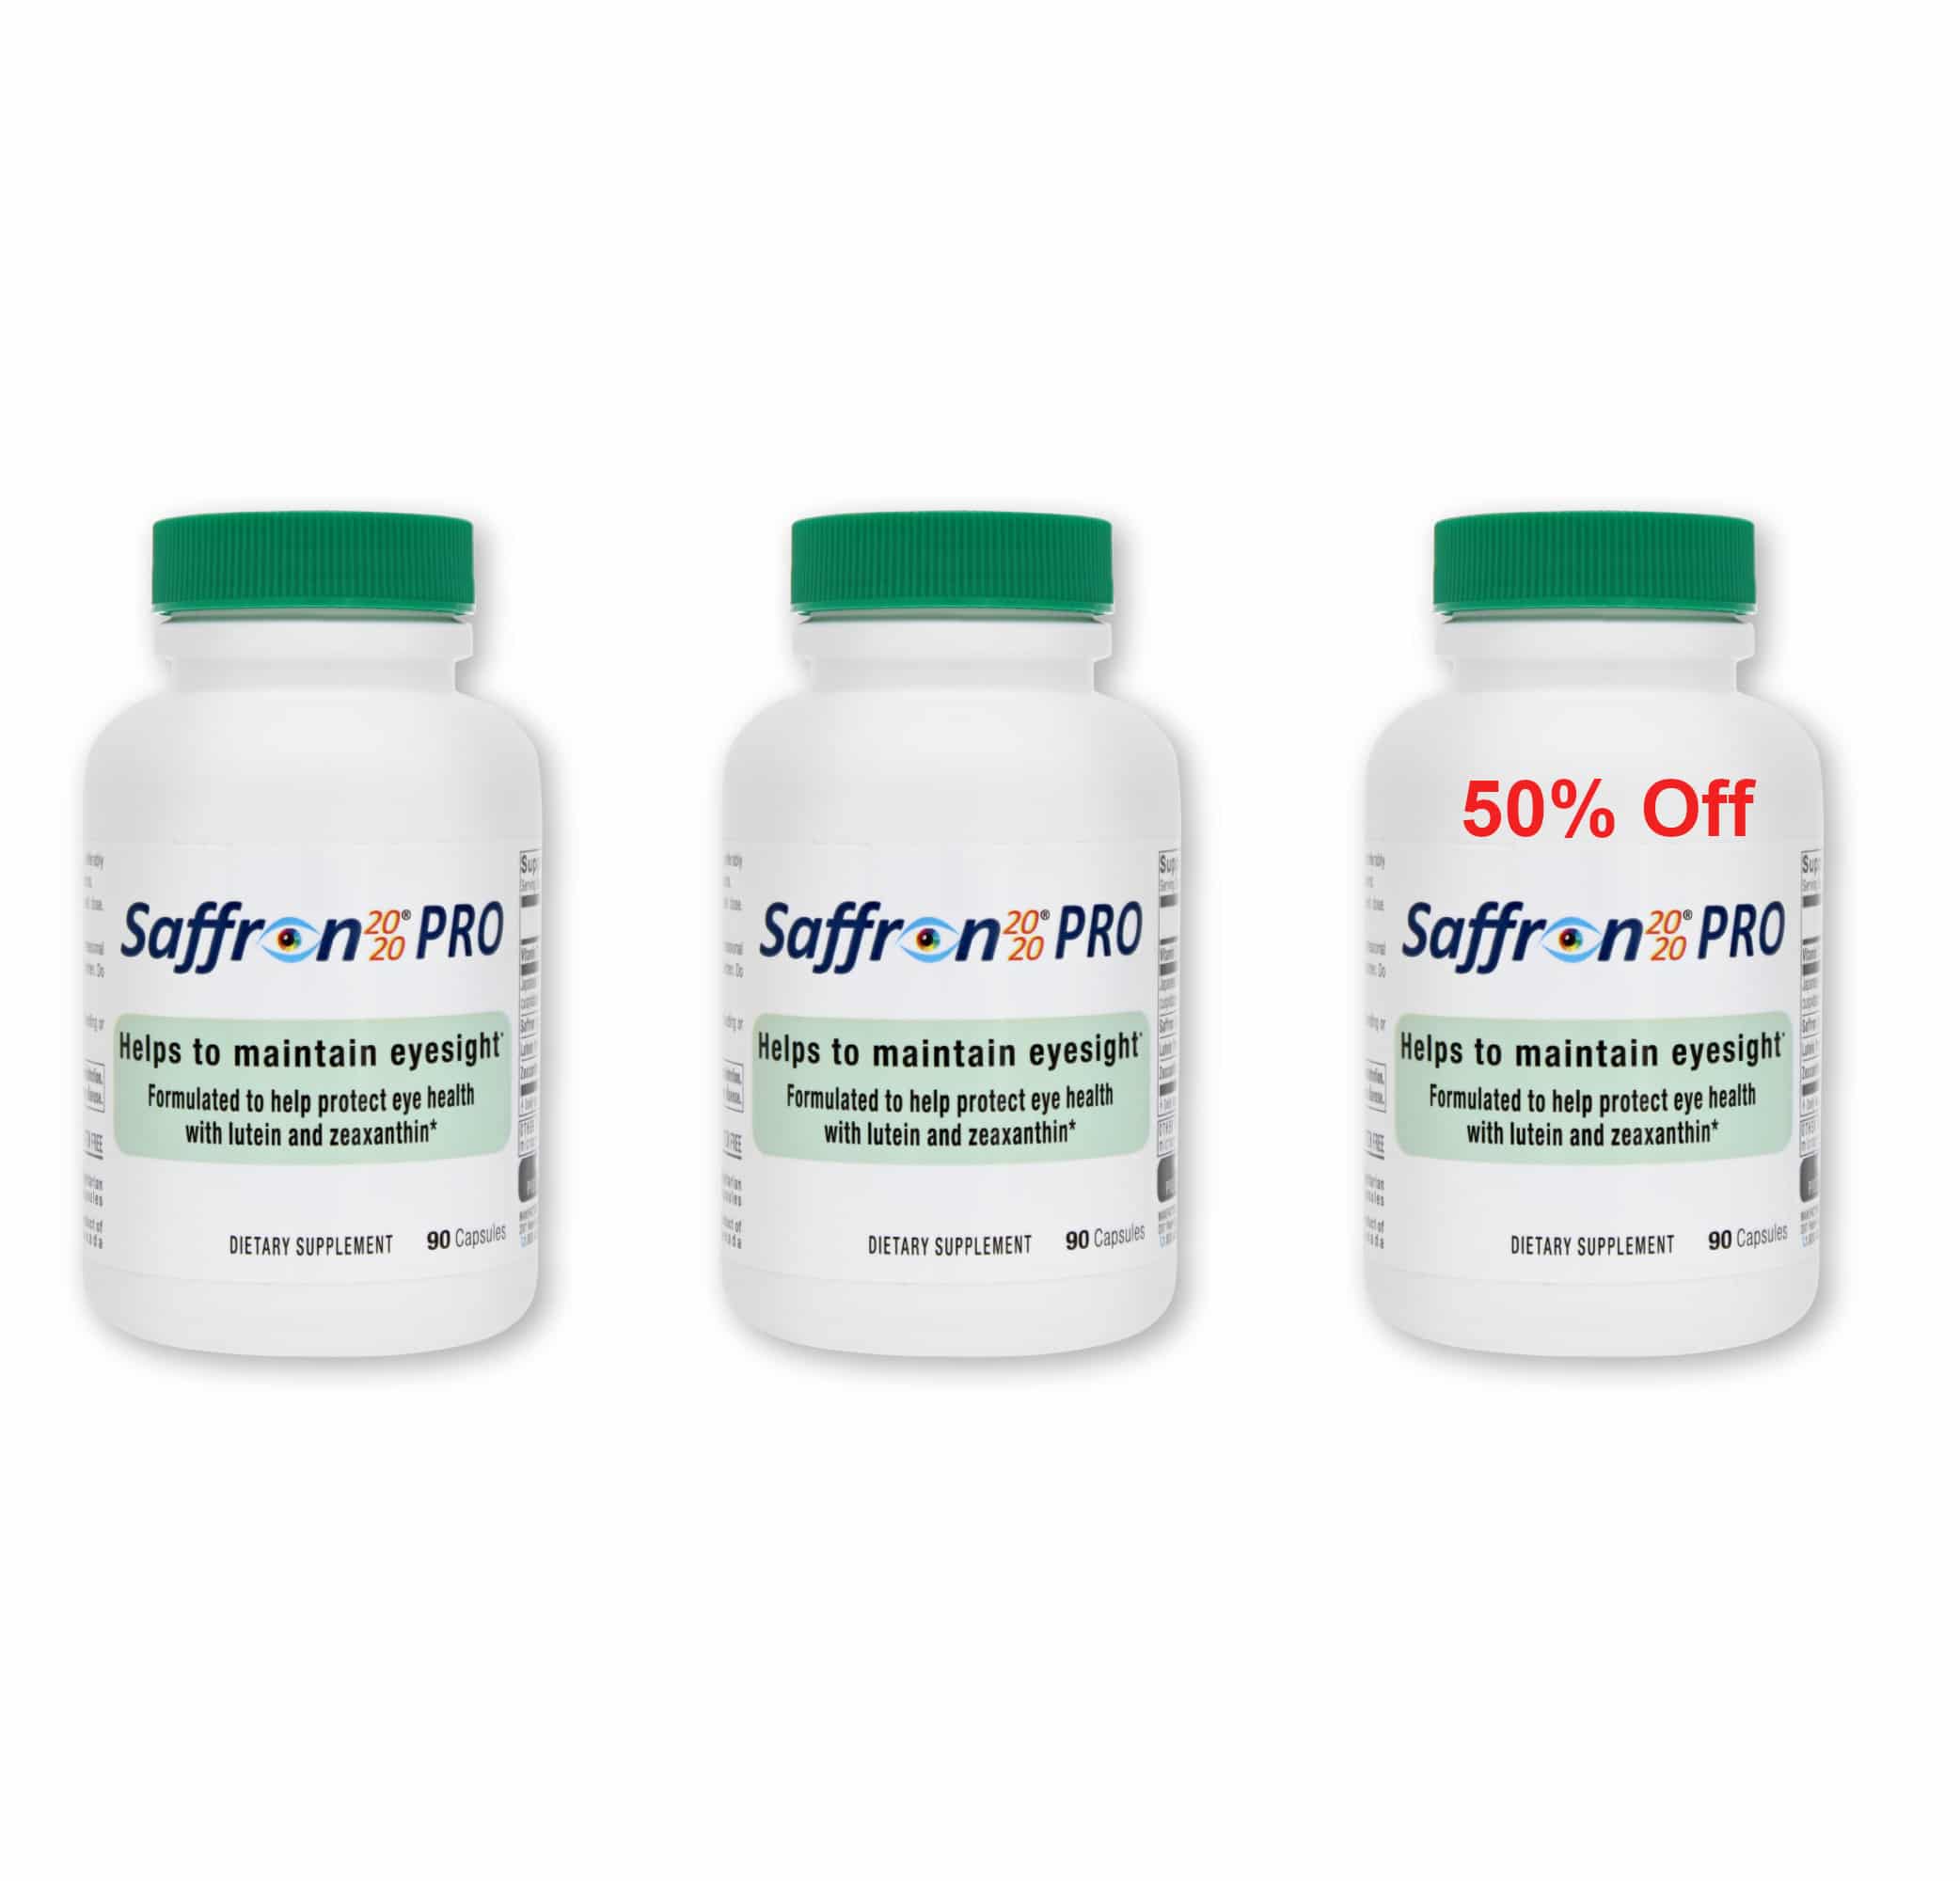 Saffron 2020-PRO Offer USA: Buy 2 Bottles, Get the 3rd at 50% Off!